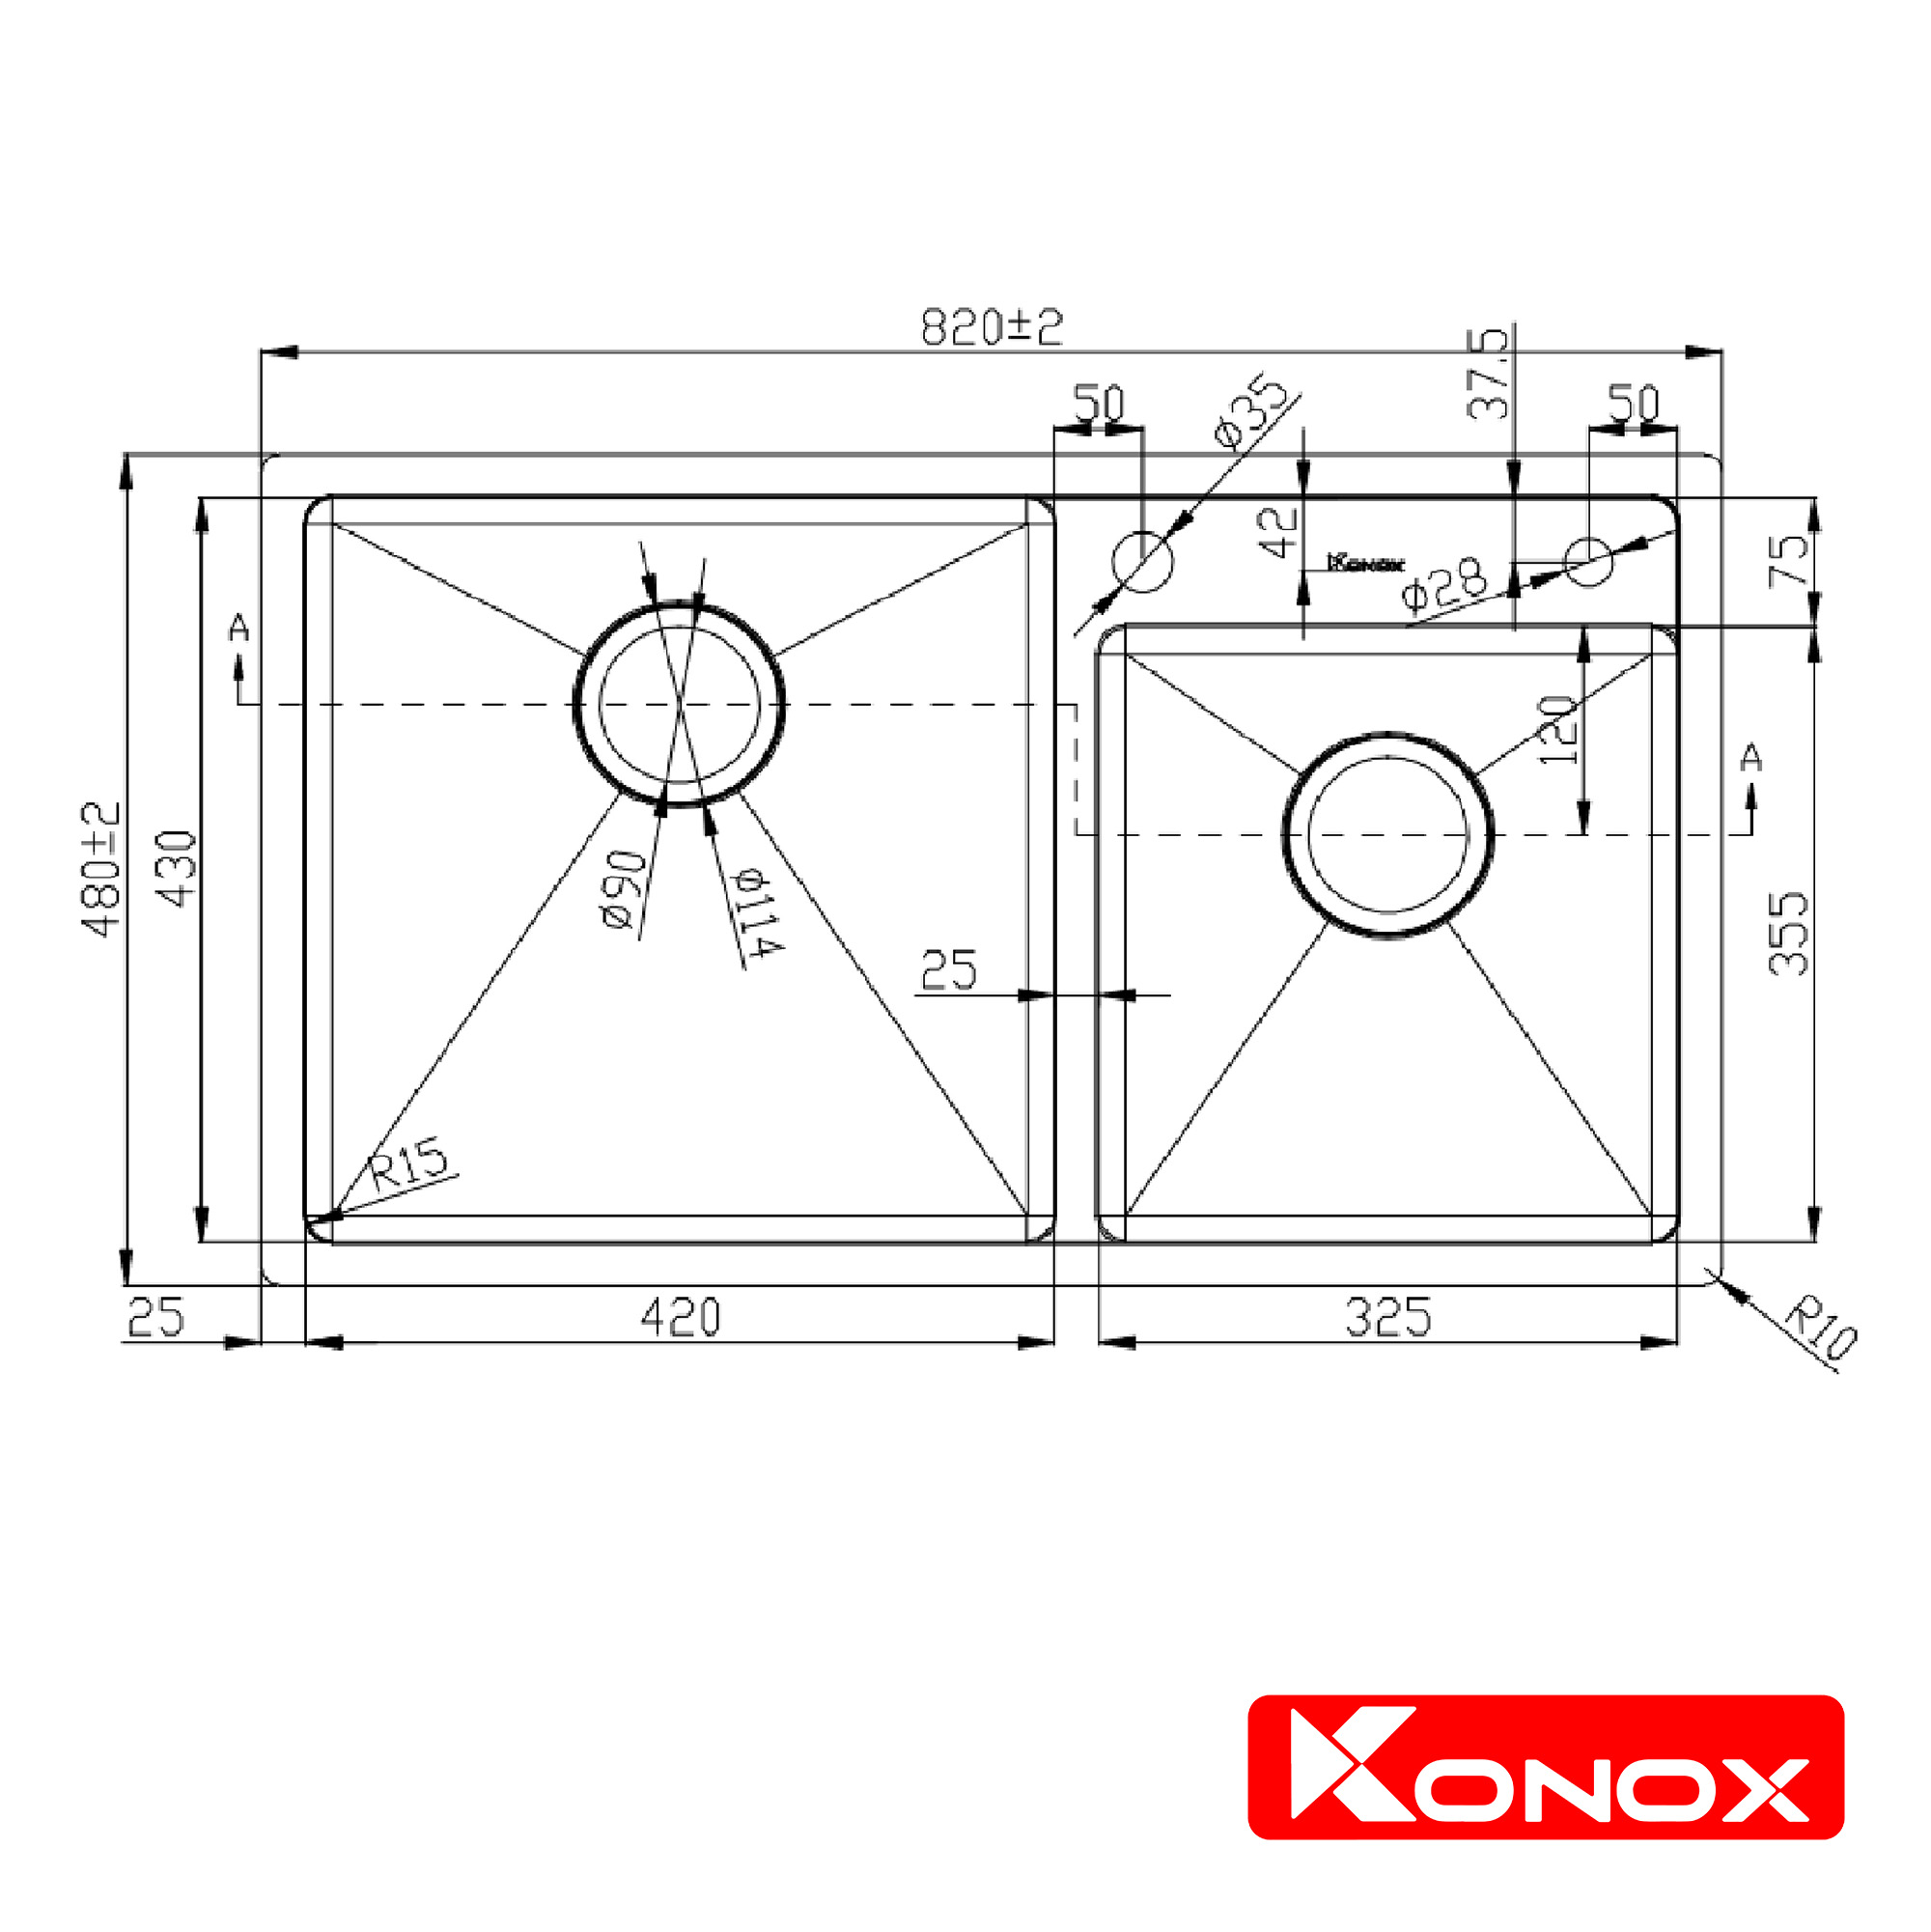 Chậu rửa bát Konox, Overmount Series, Model KN8248DO, Inox 304AISI tiêu chuẩn châu Âu, 820x480x228(mm), Full set gồm Siphon + giá úp bát inox, Hàng chính hãng